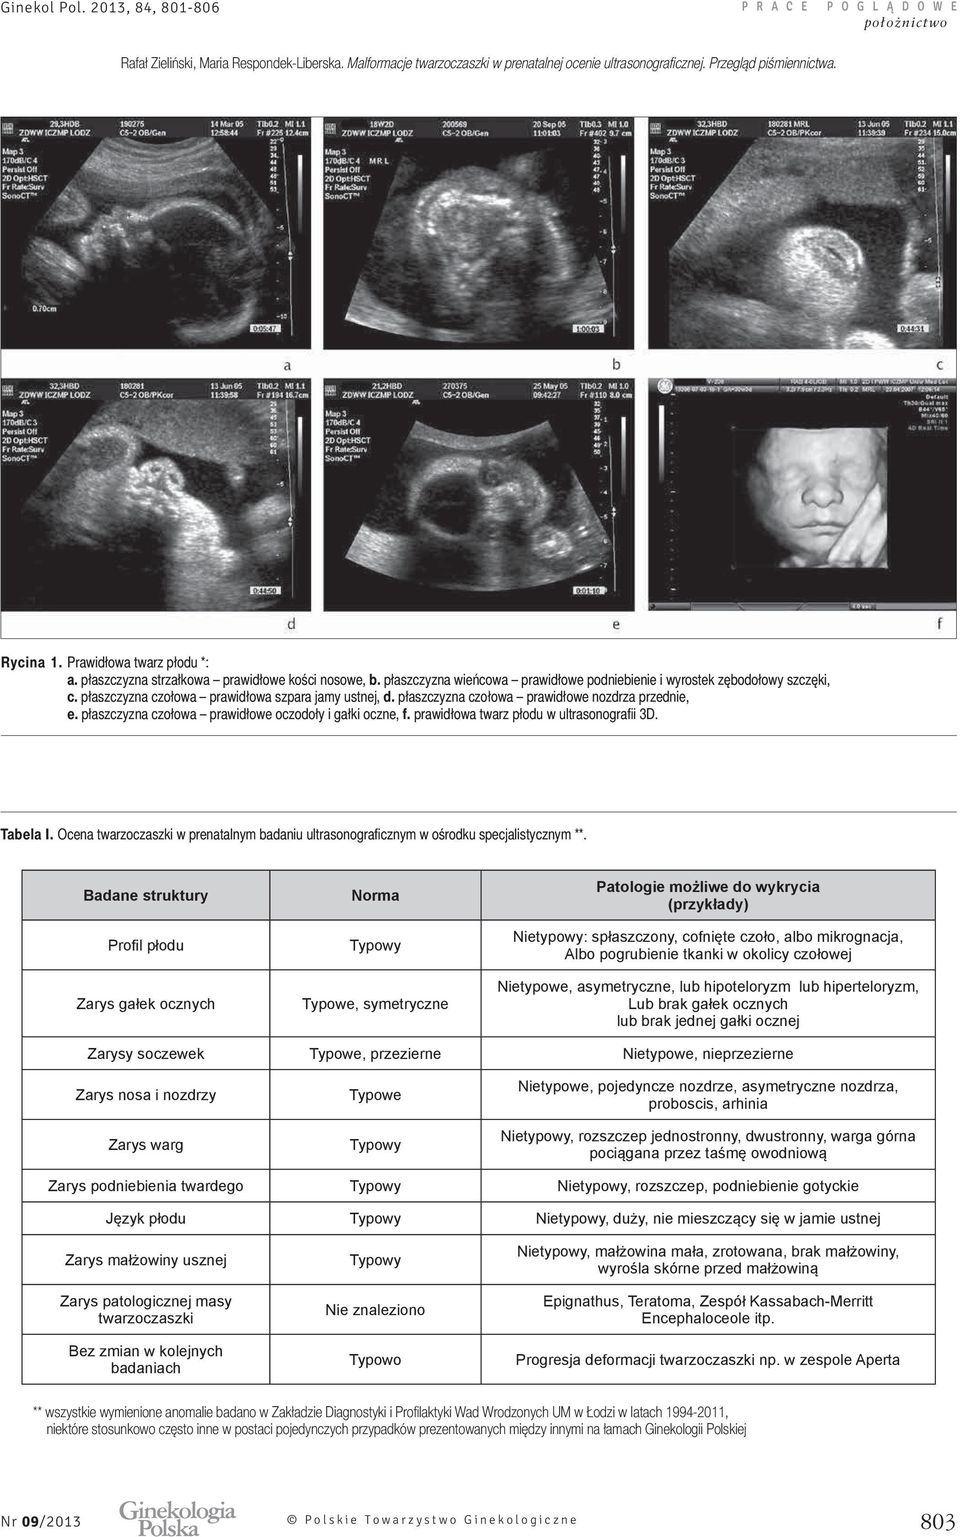 prawidłowa twarz płodu w ultrasonografii 3D. Tabela I. Ocena twarzoczaszki w prenatalnym badaniu ultrasonograficznym w ośrodku specjalistycznym **.